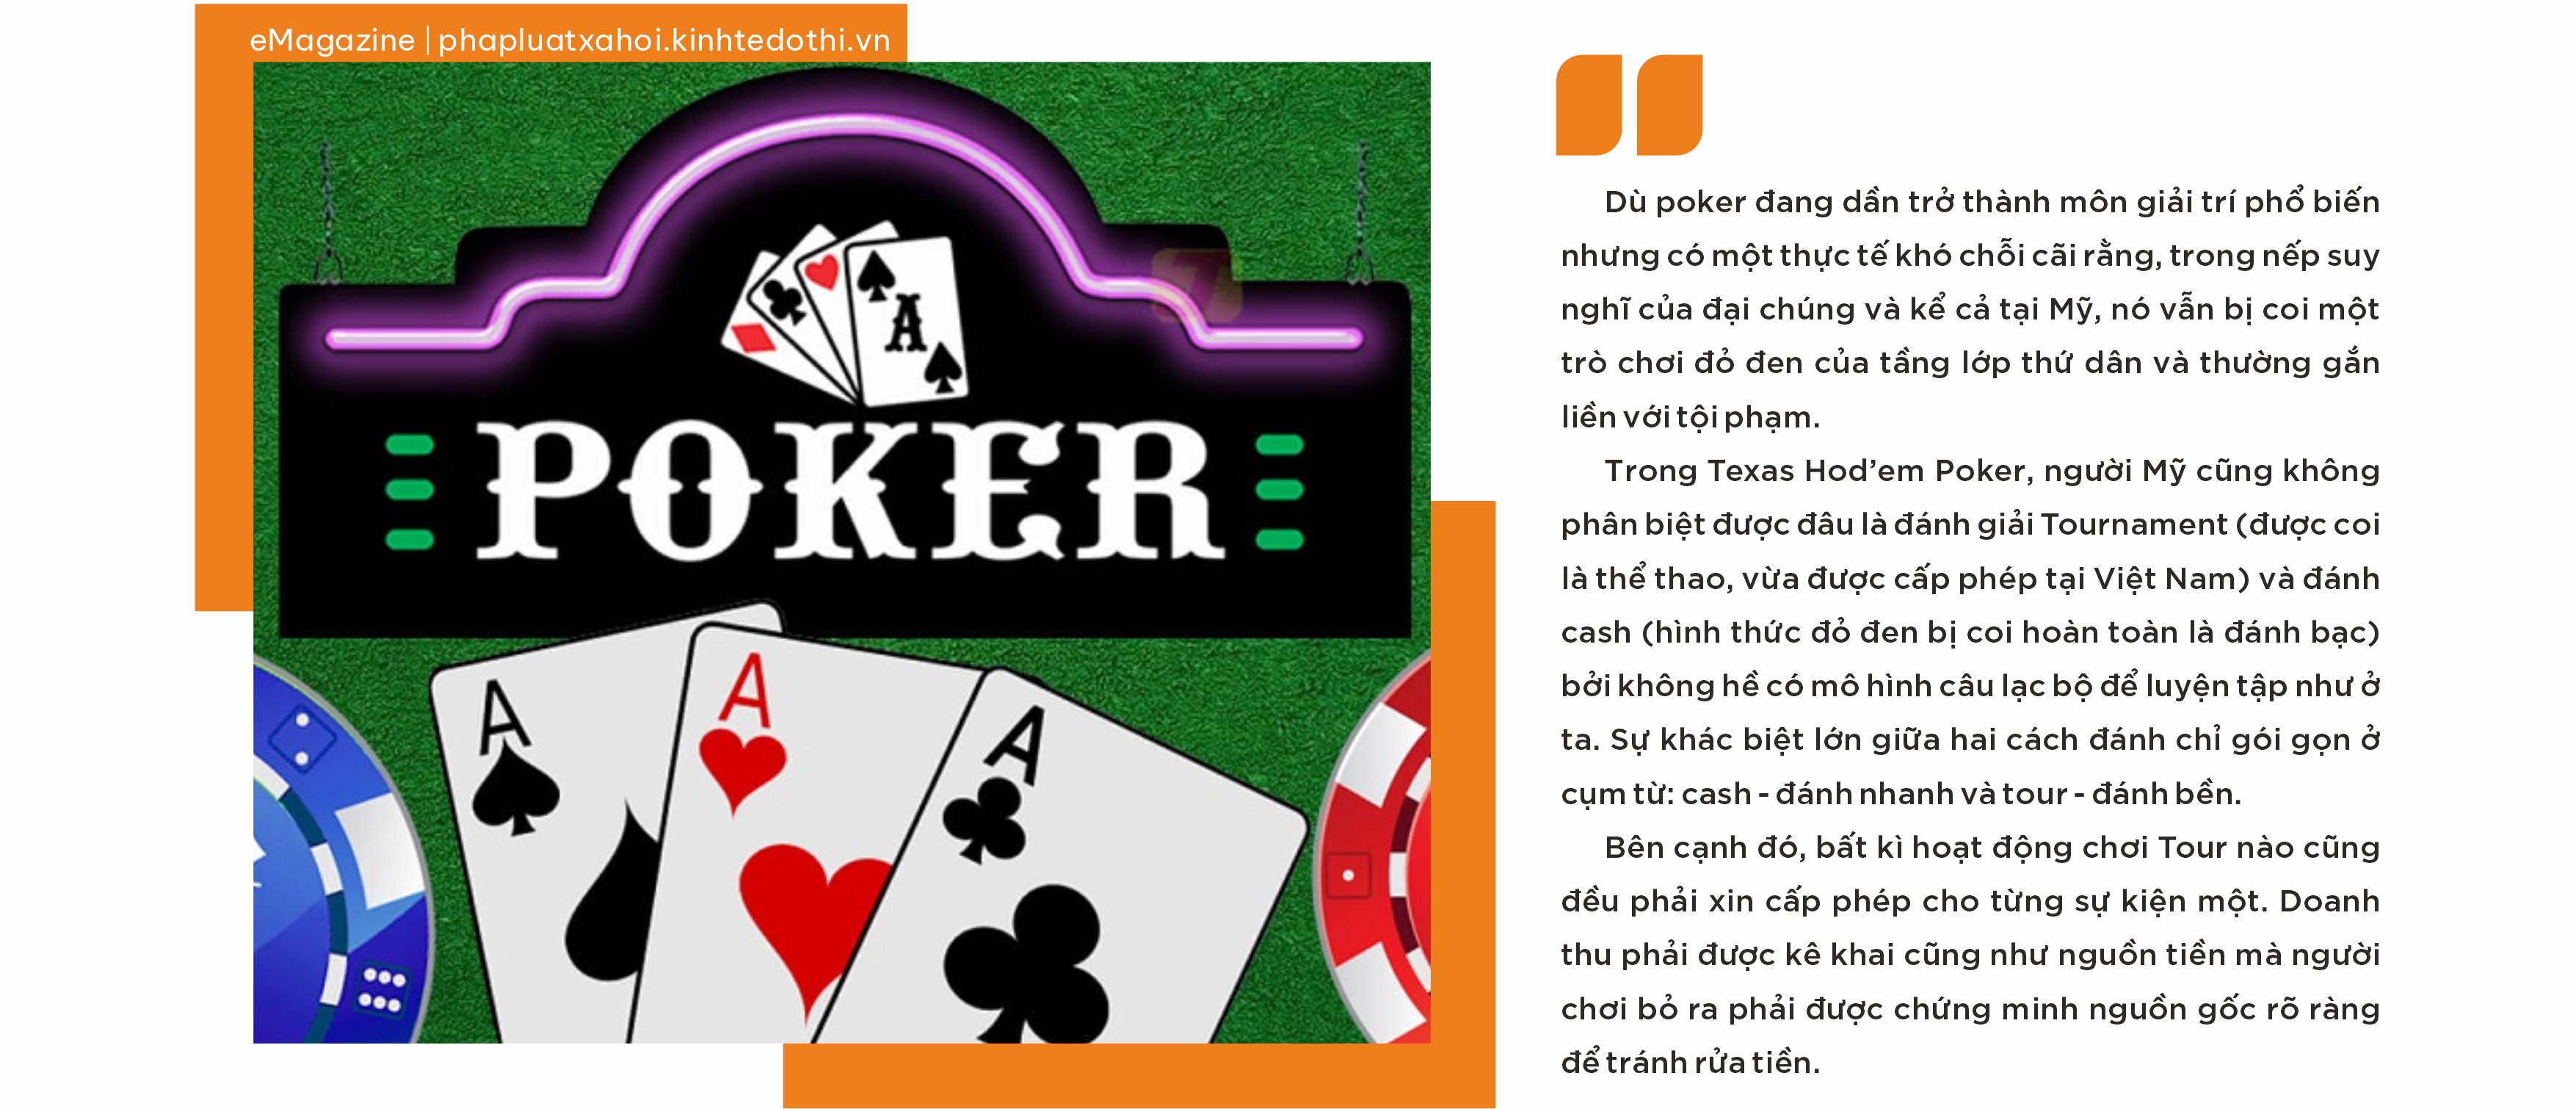 Kỳ 3: Poker là gì?